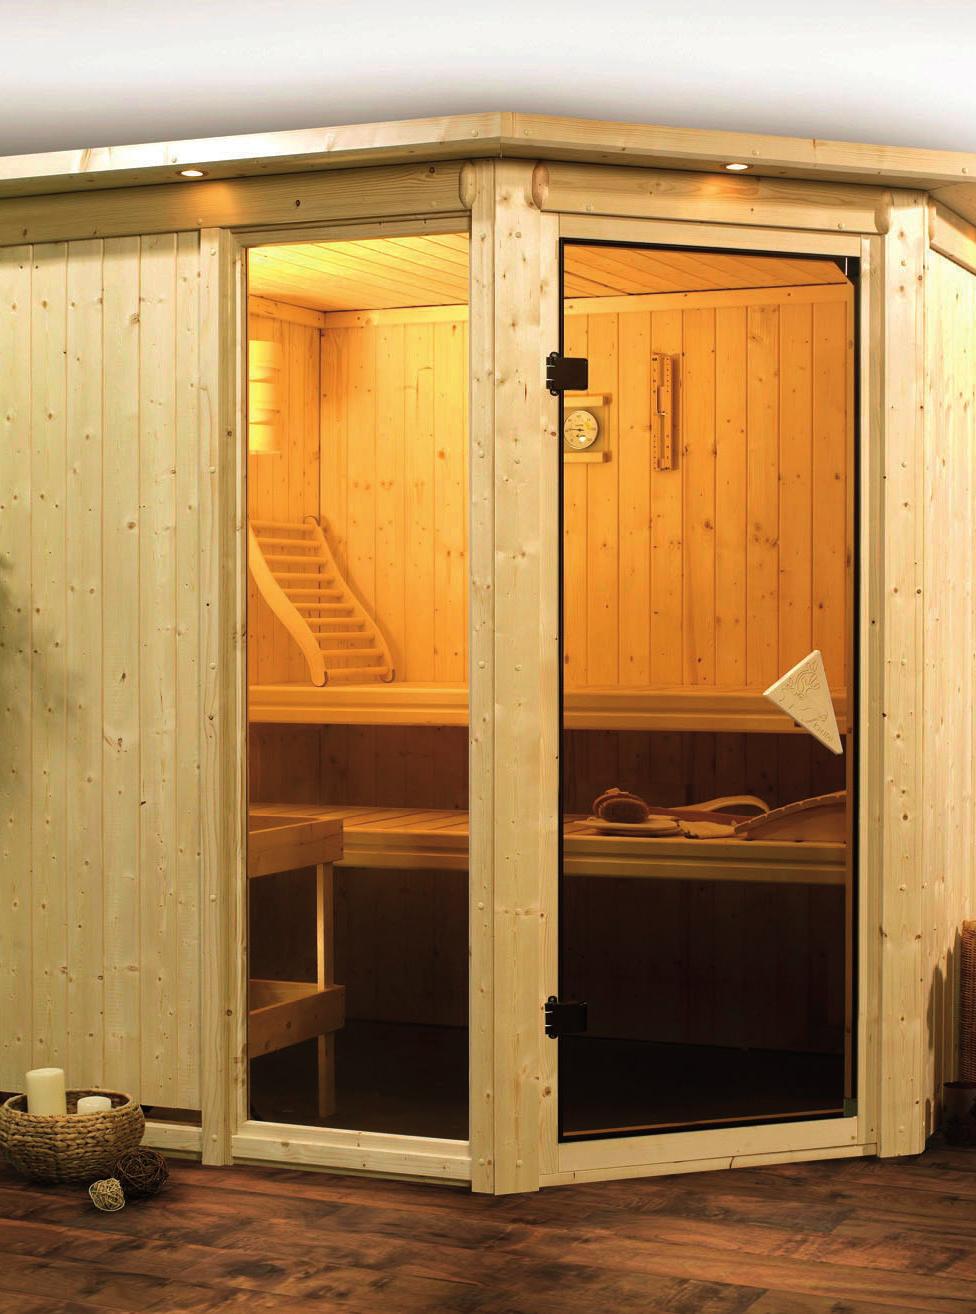 Wissenswertes zum Thema Sauna Wir beantworten Ihnen alle Fragen rund um den Aufbau und Nutzen von Saunen.